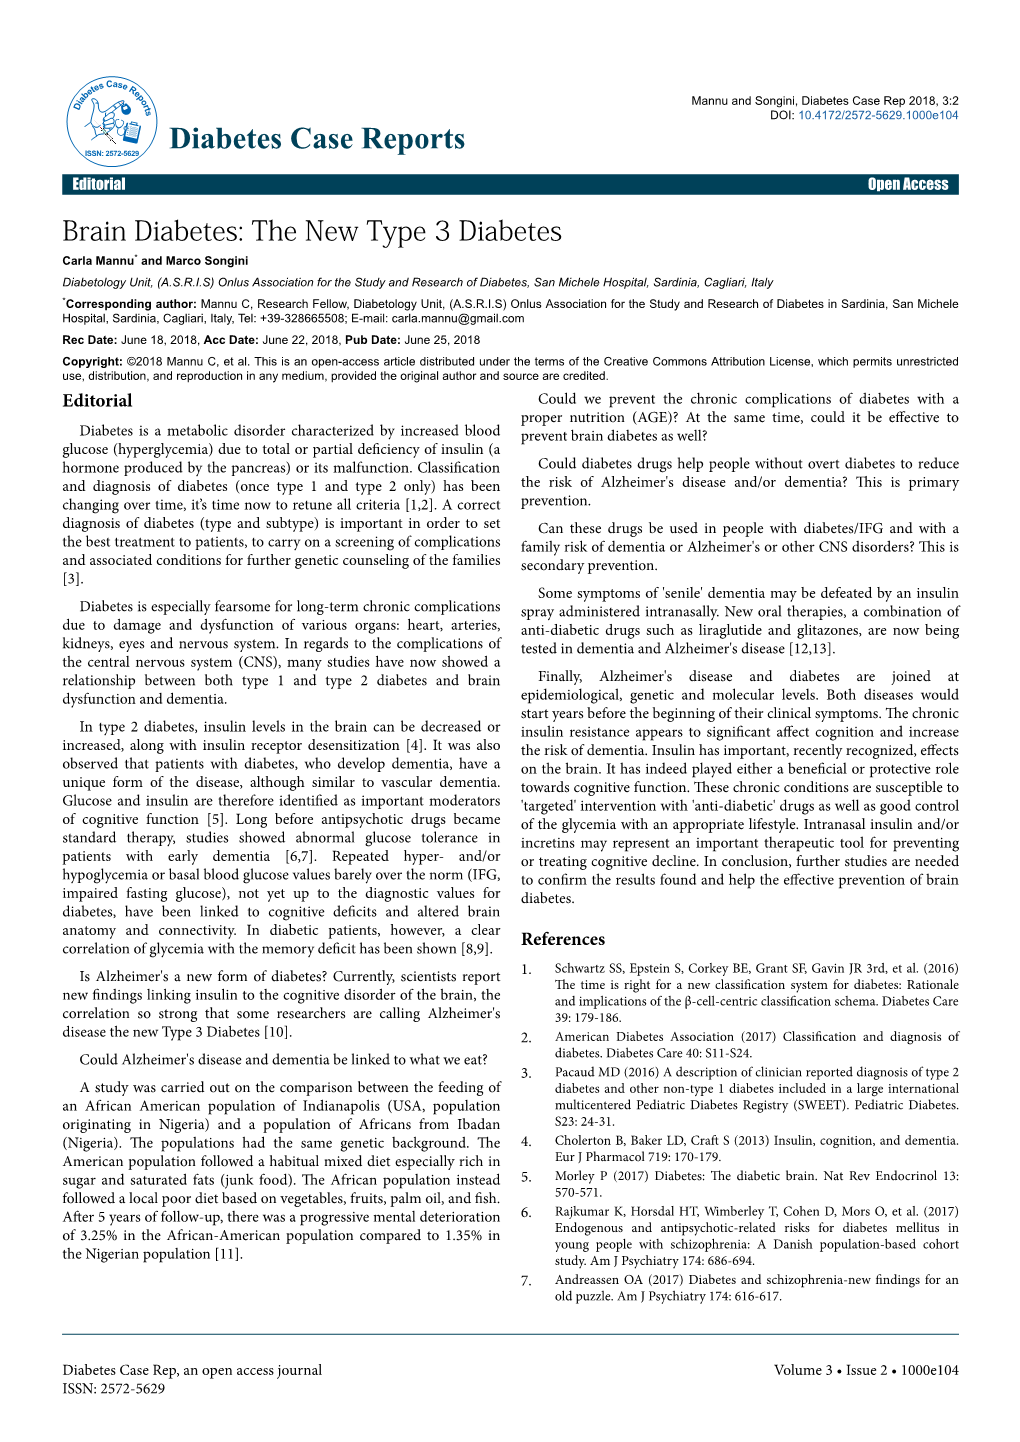 Brain Diabetes: the New Type 3 Diabetes